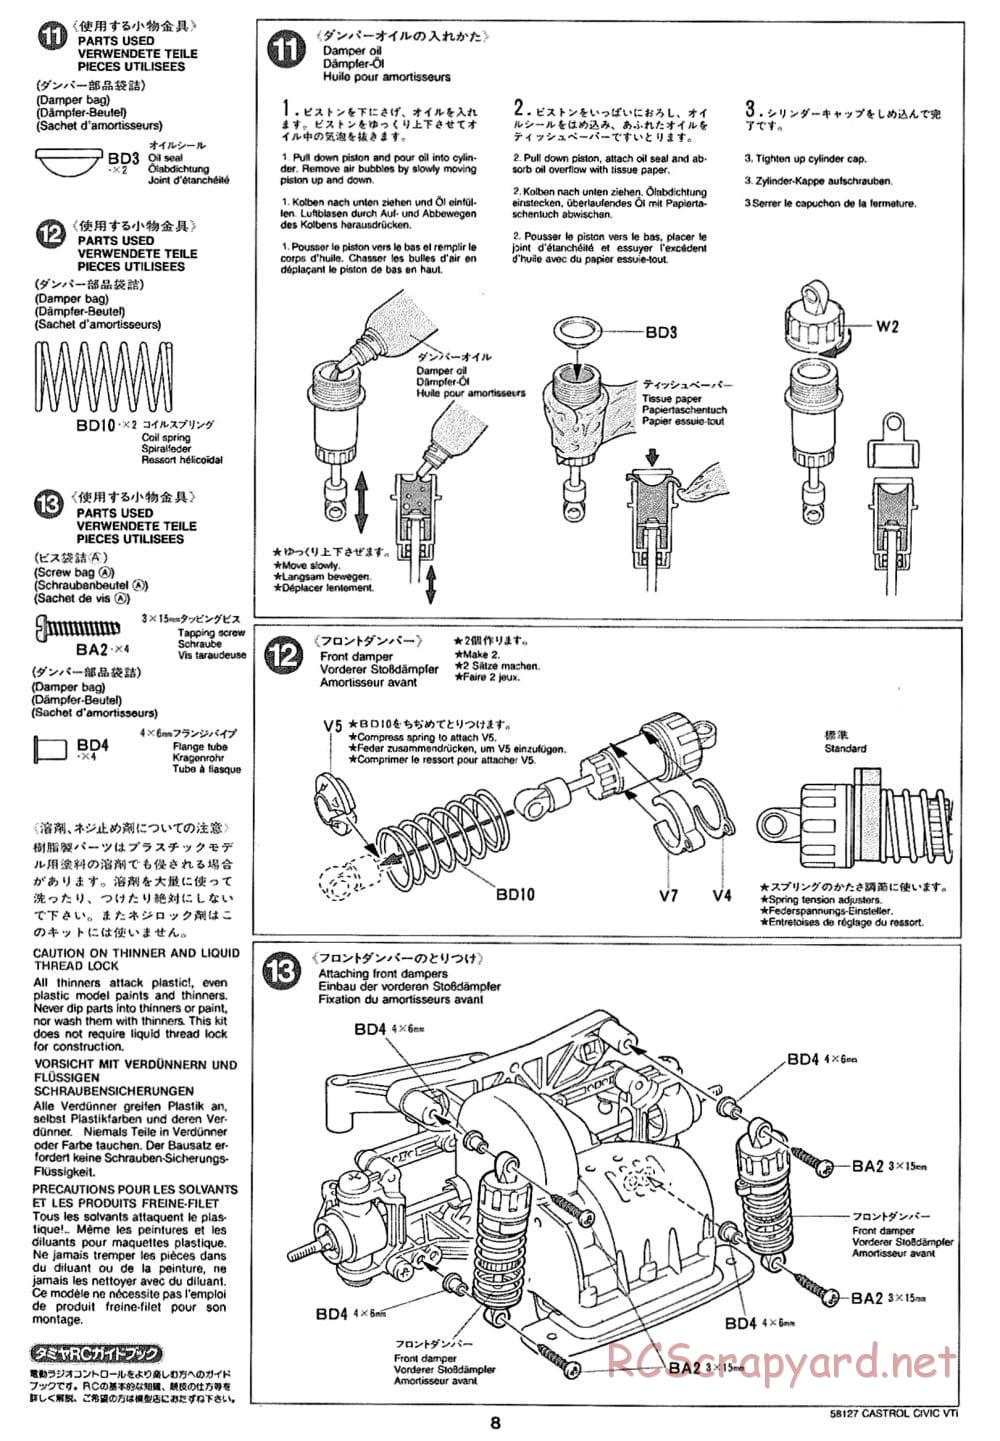 Tamiya - Castrol Honda Civic VTi - FF-01 Chassis - Manual - Page 8